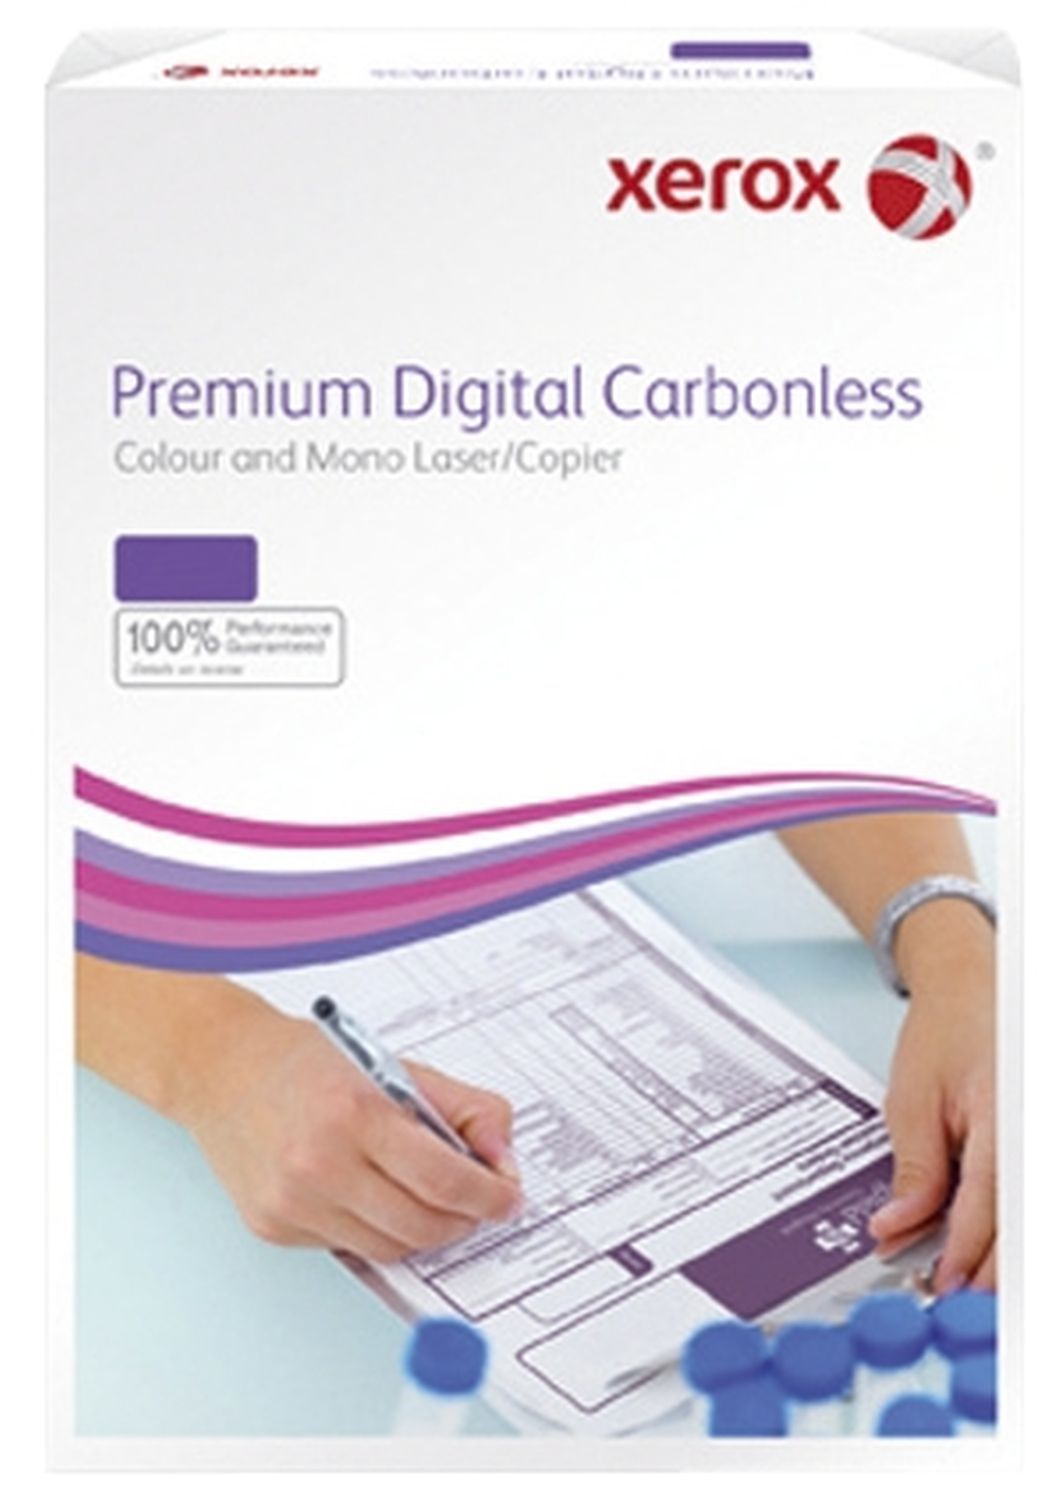 Durchschreibepapier Premium Digital Carbonless 003R99111, 4-fach, DIN A4, weiß/gelb/rosa/blau, 500 Blatt